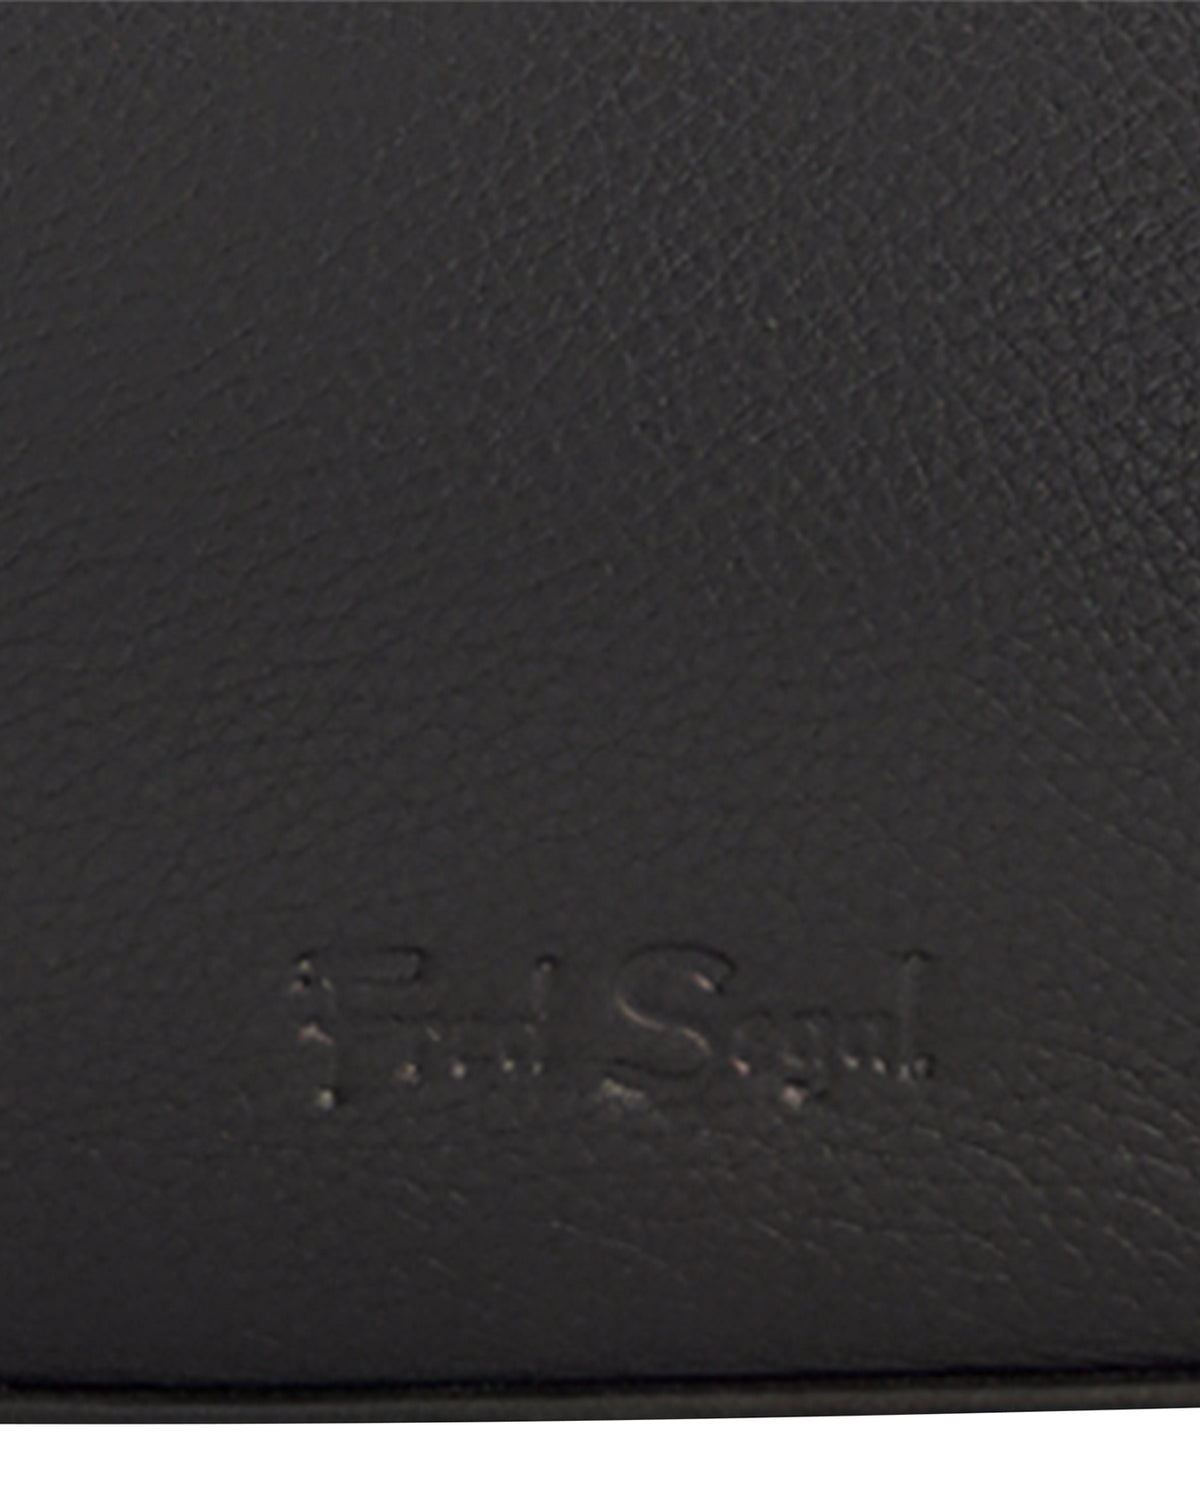 Leather Mini Shoulder Bag - Black